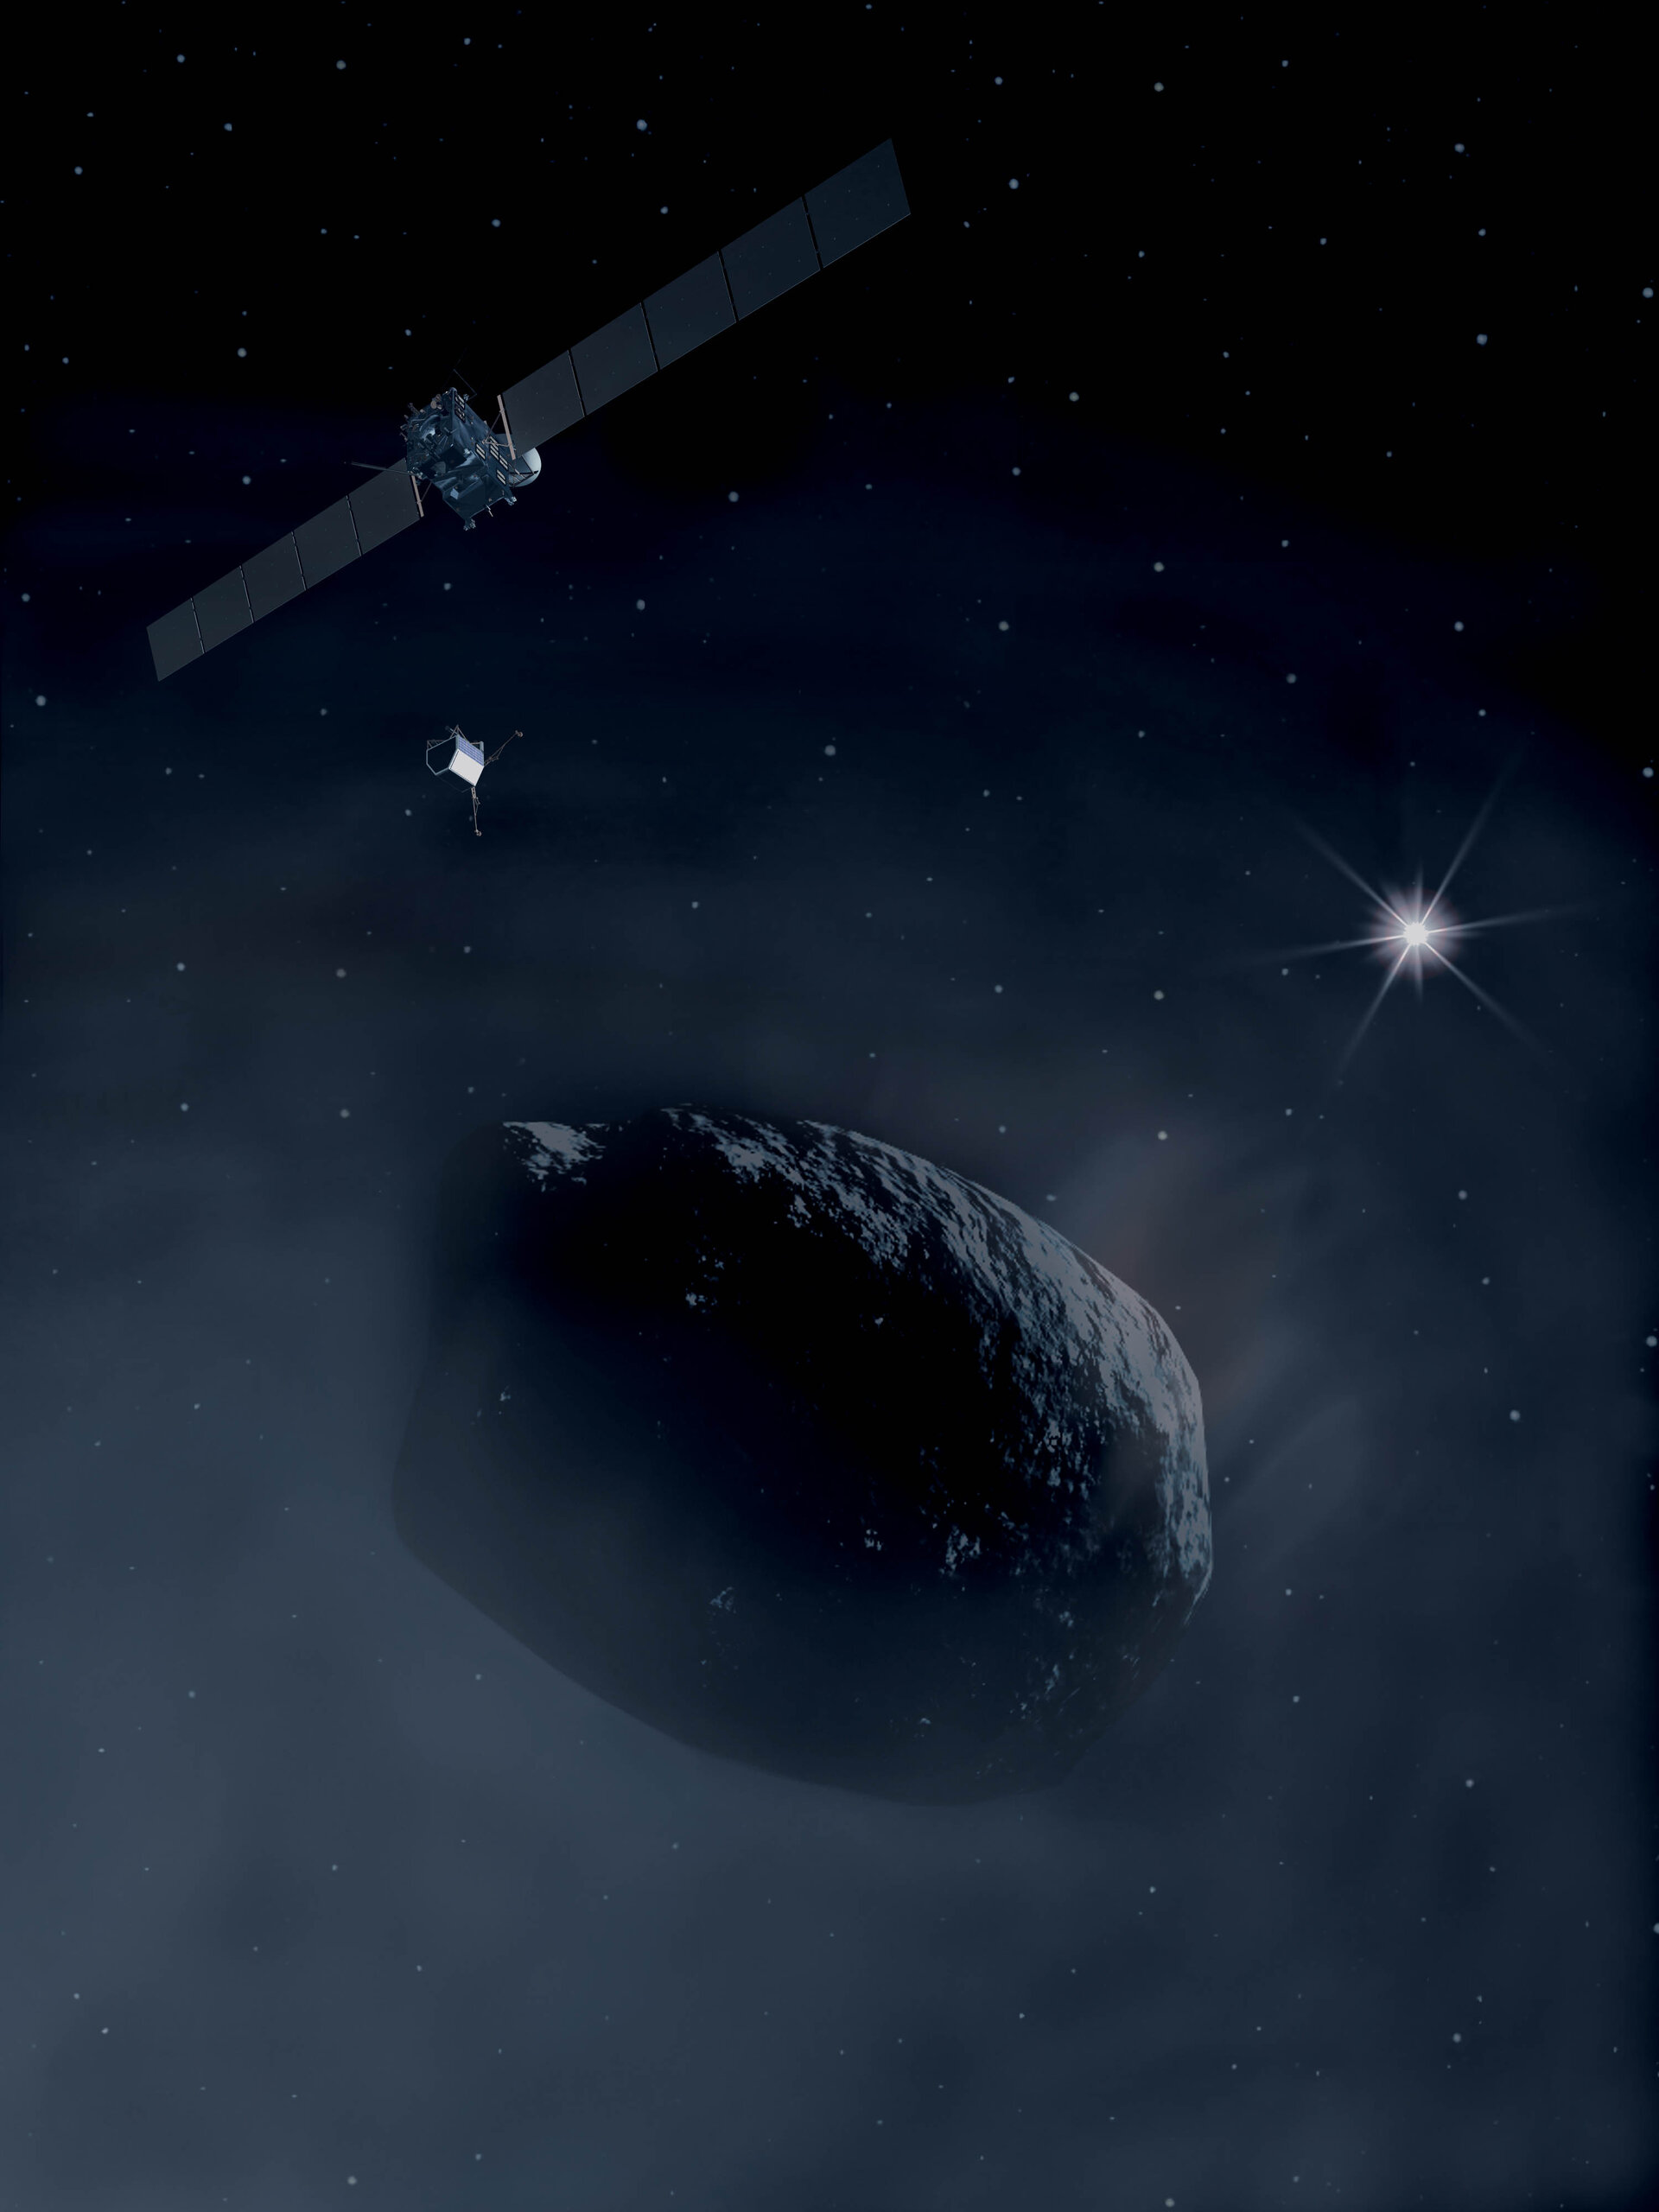 Rosetta - the comet chaser